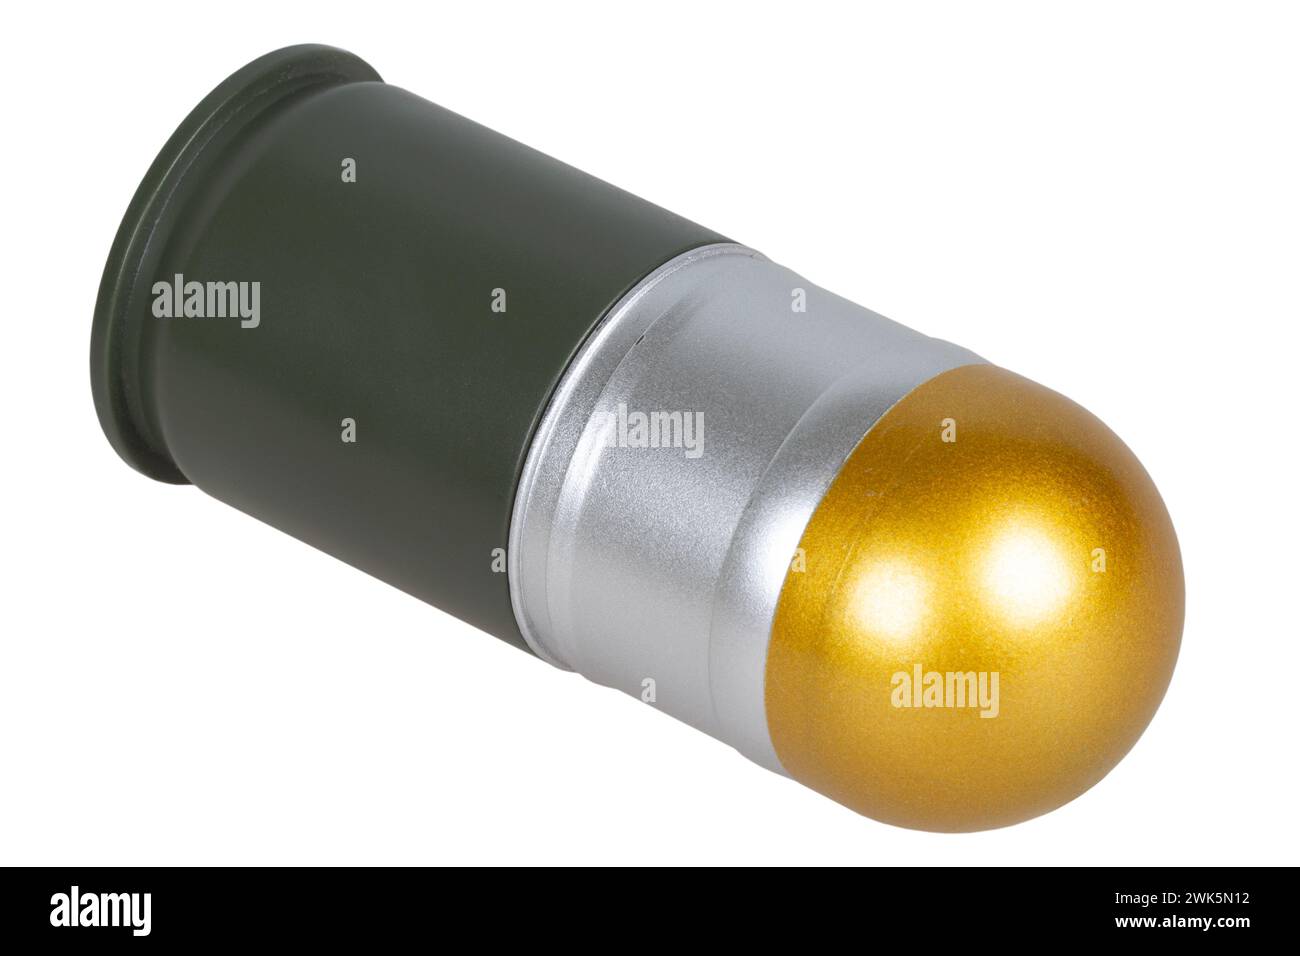 cartouche de lance-grenades de 40 mm pour lance-grenades automatique isolé sur un blanc Banque D'Images